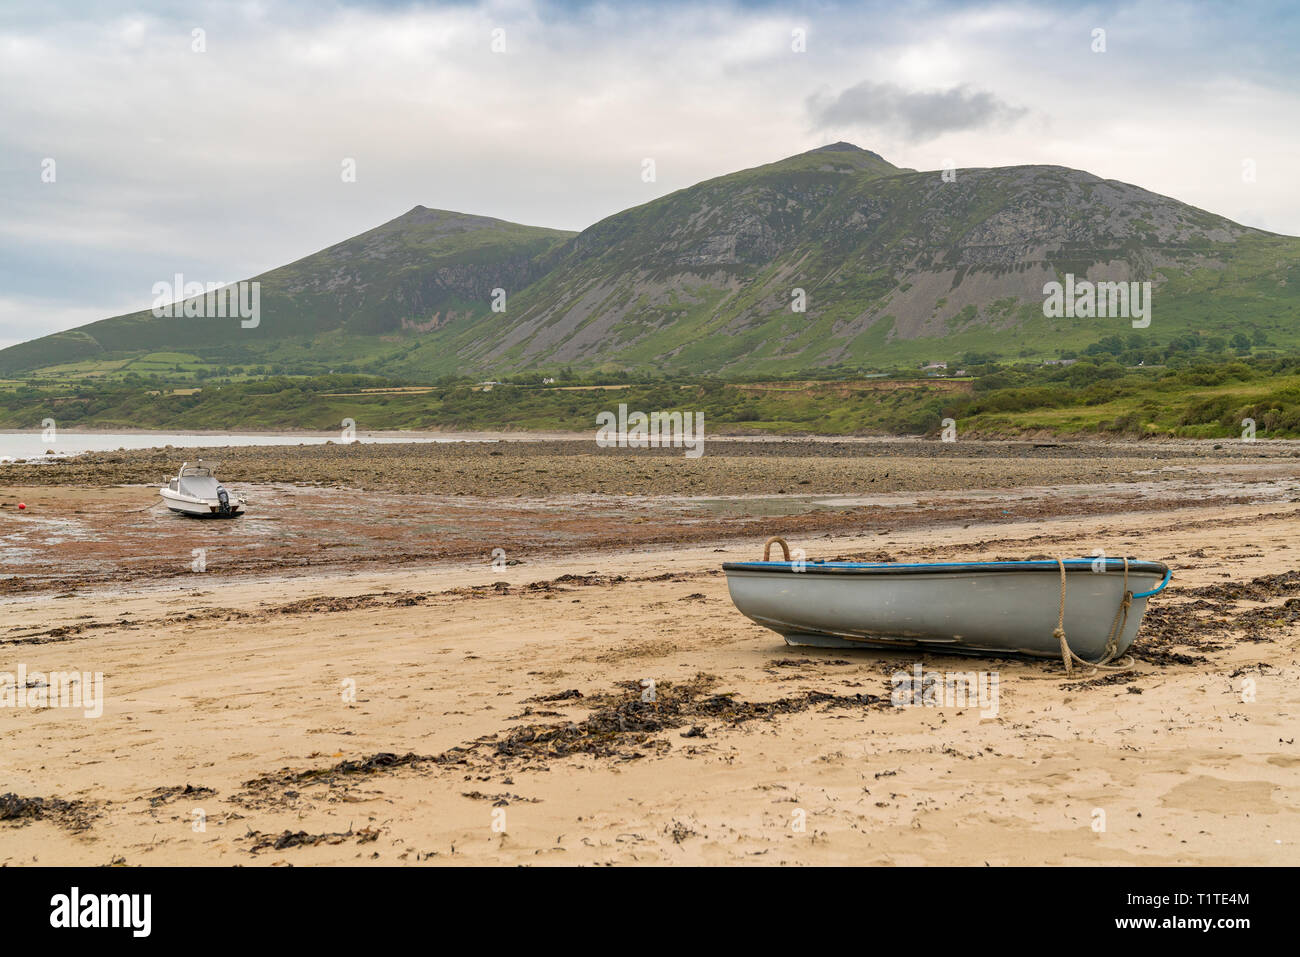 Sur le paysage gallois Llyn Peninsula - avec quelques bateaux sur la plage et Gyrn Goch en arrière-plan, vu dans Trefor, Gwynedd, Pays de Galles, Royaume-Uni Banque D'Images